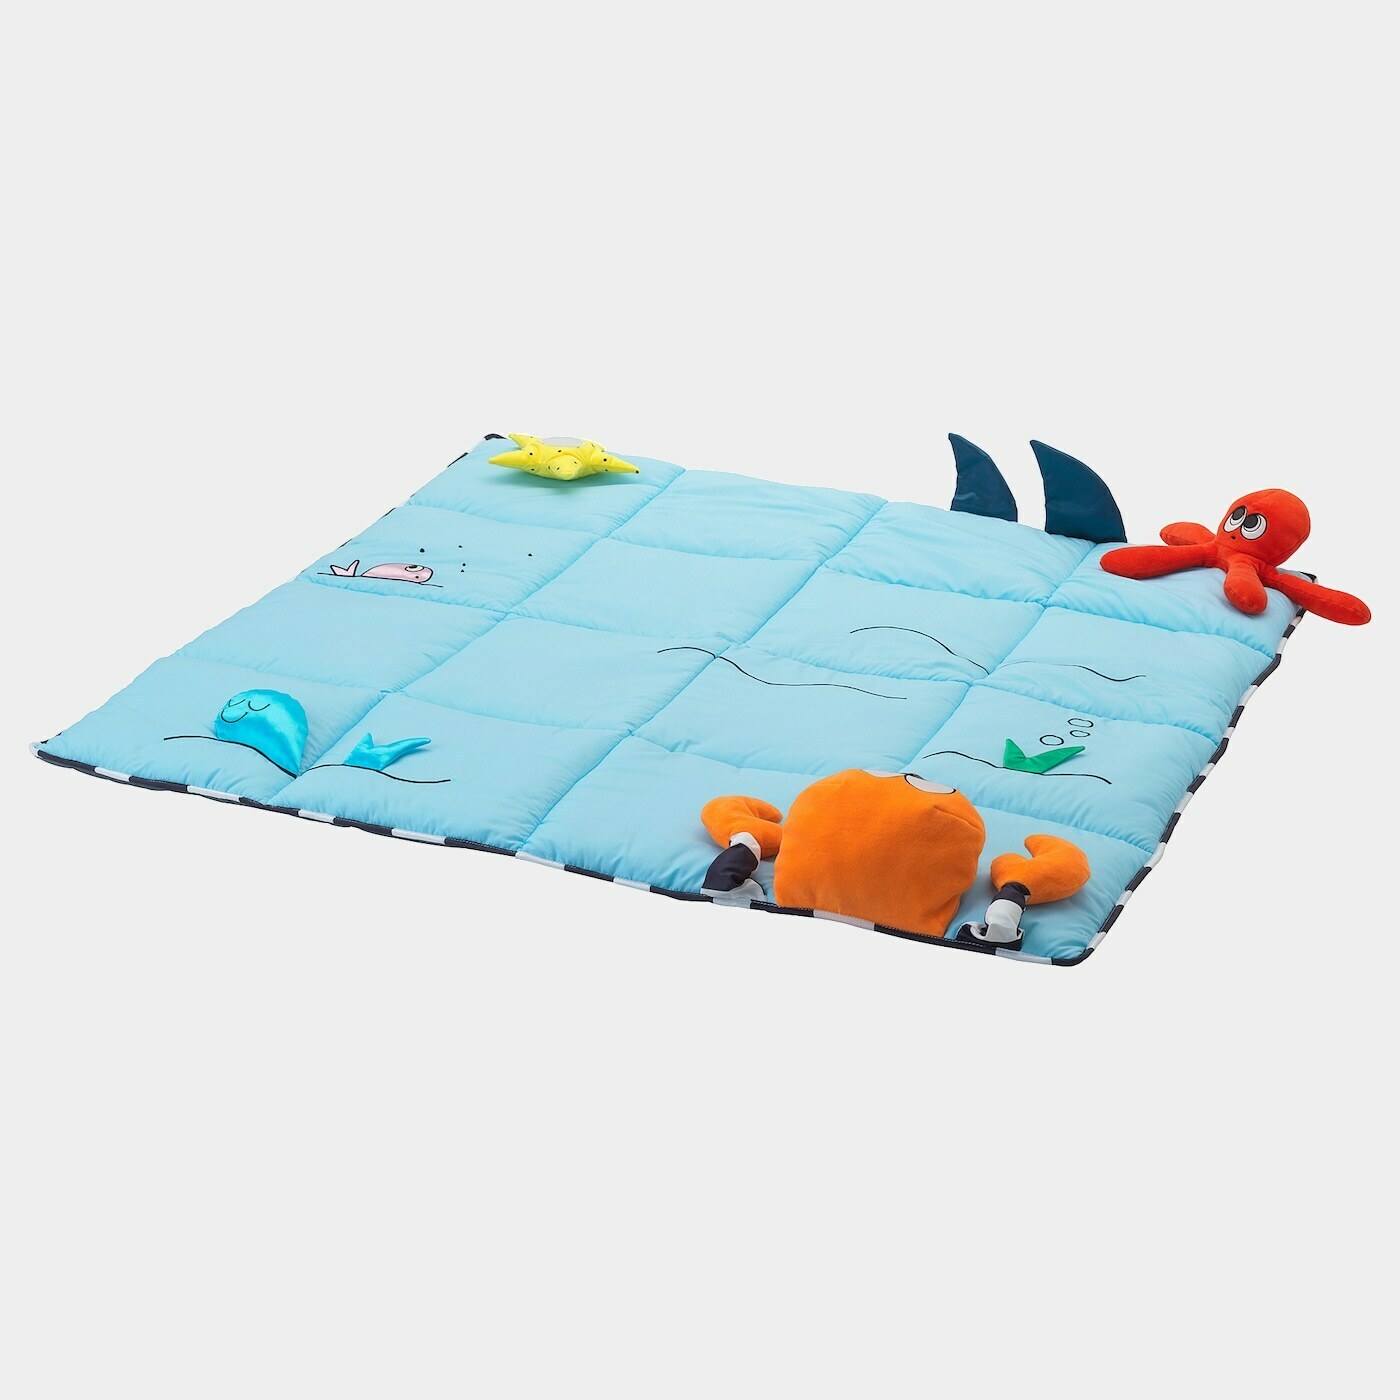 KLAPPA Spielteppich  - Babyspielzeug - Babyausstattung & Kinderzimmerzubehör Ideen für dein Zuhause von Home Trends. Babyausstattung & Kinderzimmerzubehör Trends von Social Media Influencer für dein Skandi Zuhause.